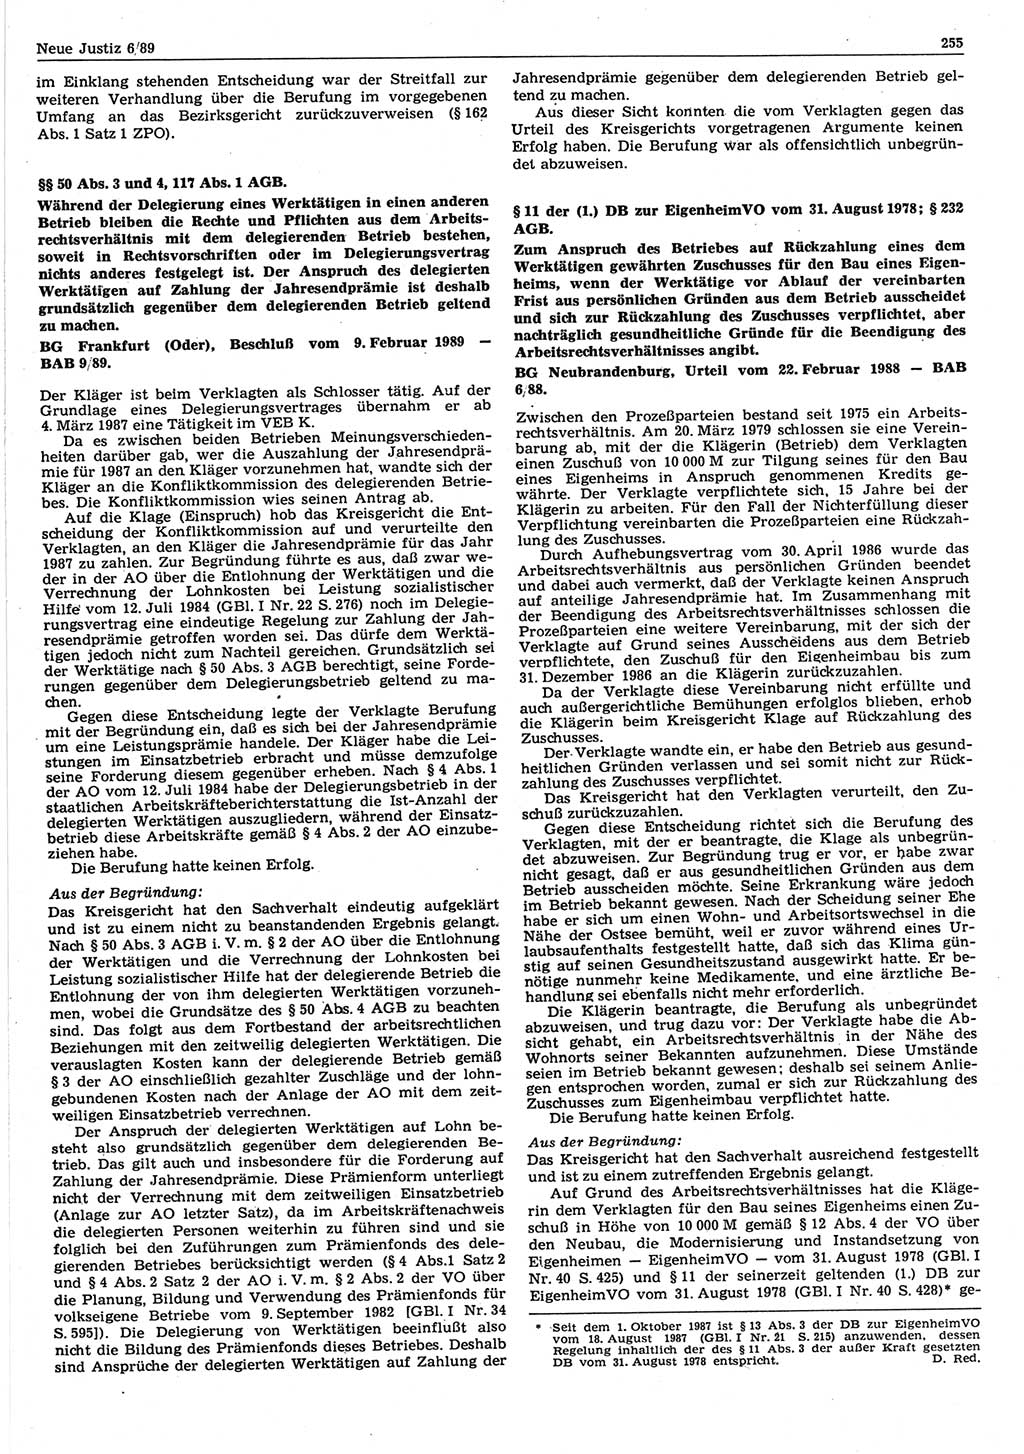 Neue Justiz (NJ), Zeitschrift für sozialistisches Recht und Gesetzlichkeit [Deutsche Demokratische Republik (DDR)], 43. Jahrgang 1989, Seite 255 (NJ DDR 1989, S. 255)